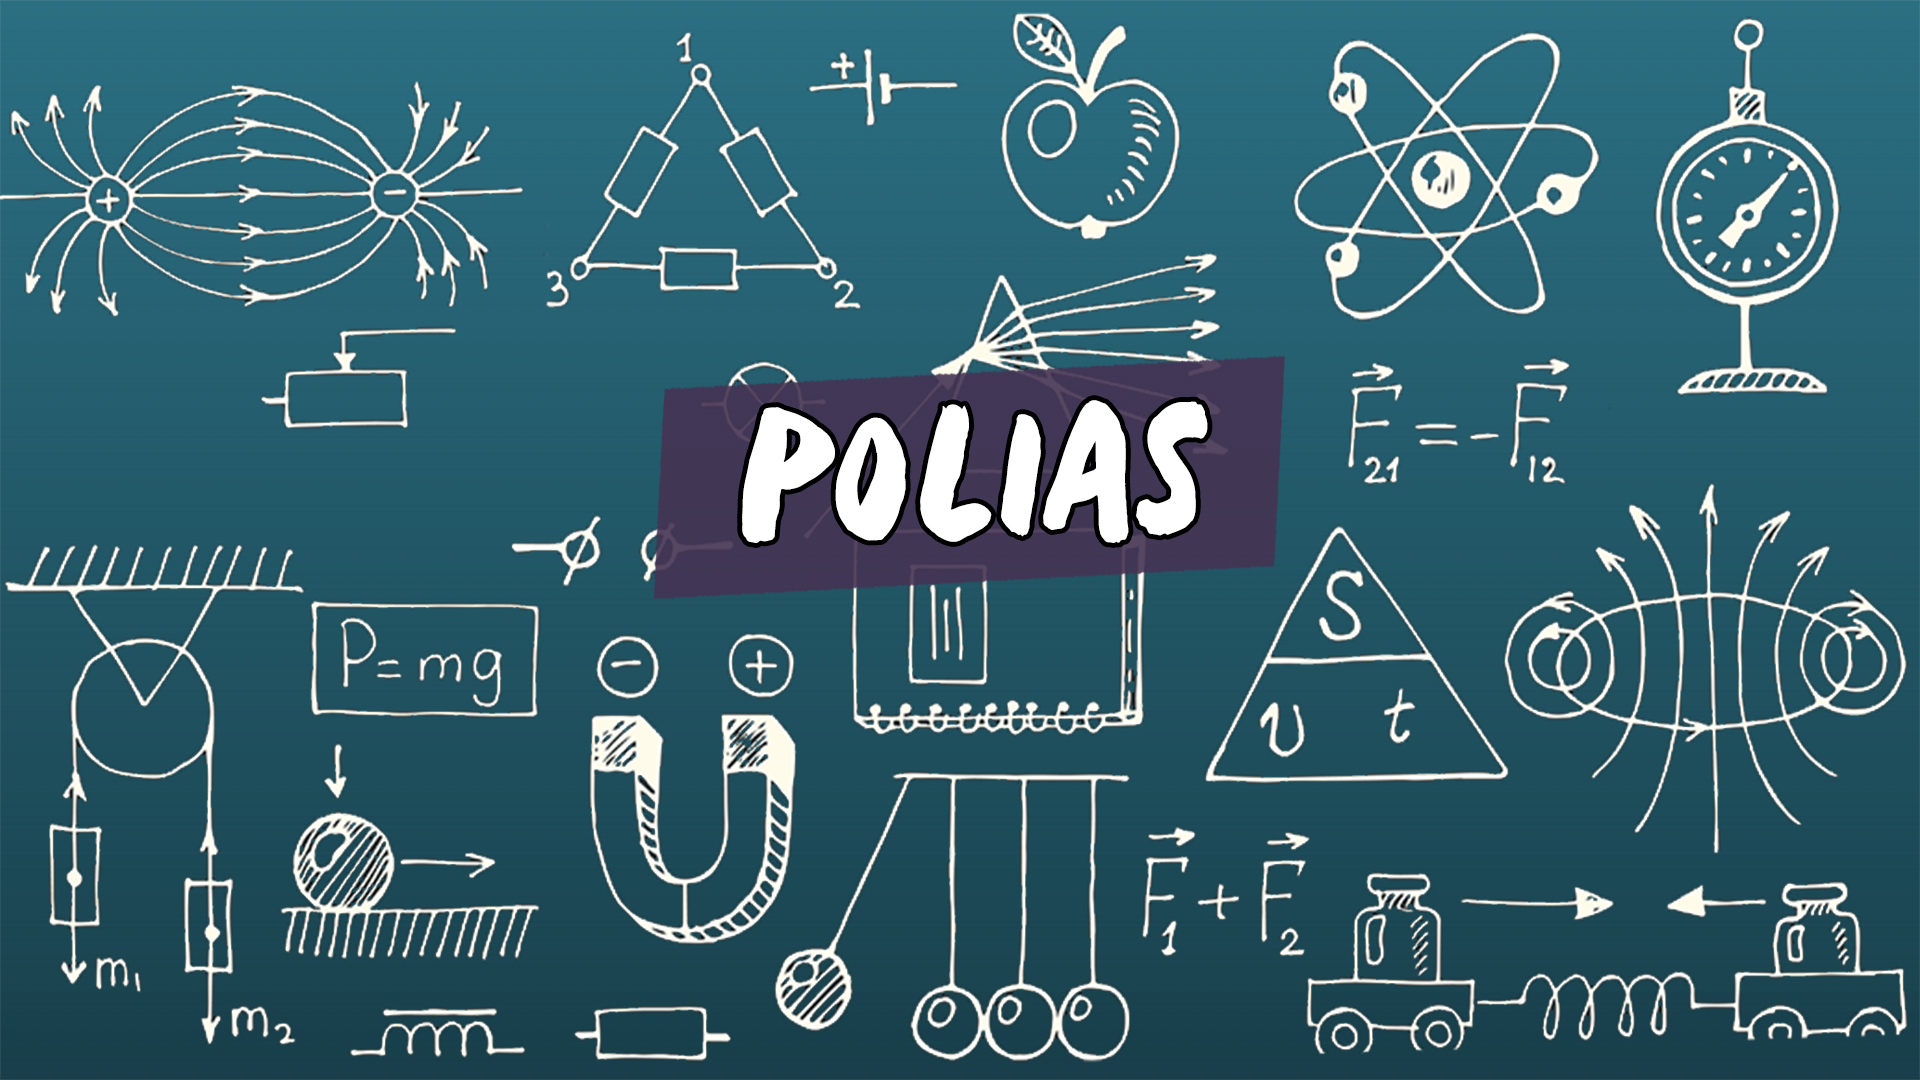 "Polias" escrito sobre ilustração de diversos símbolos matemáticos